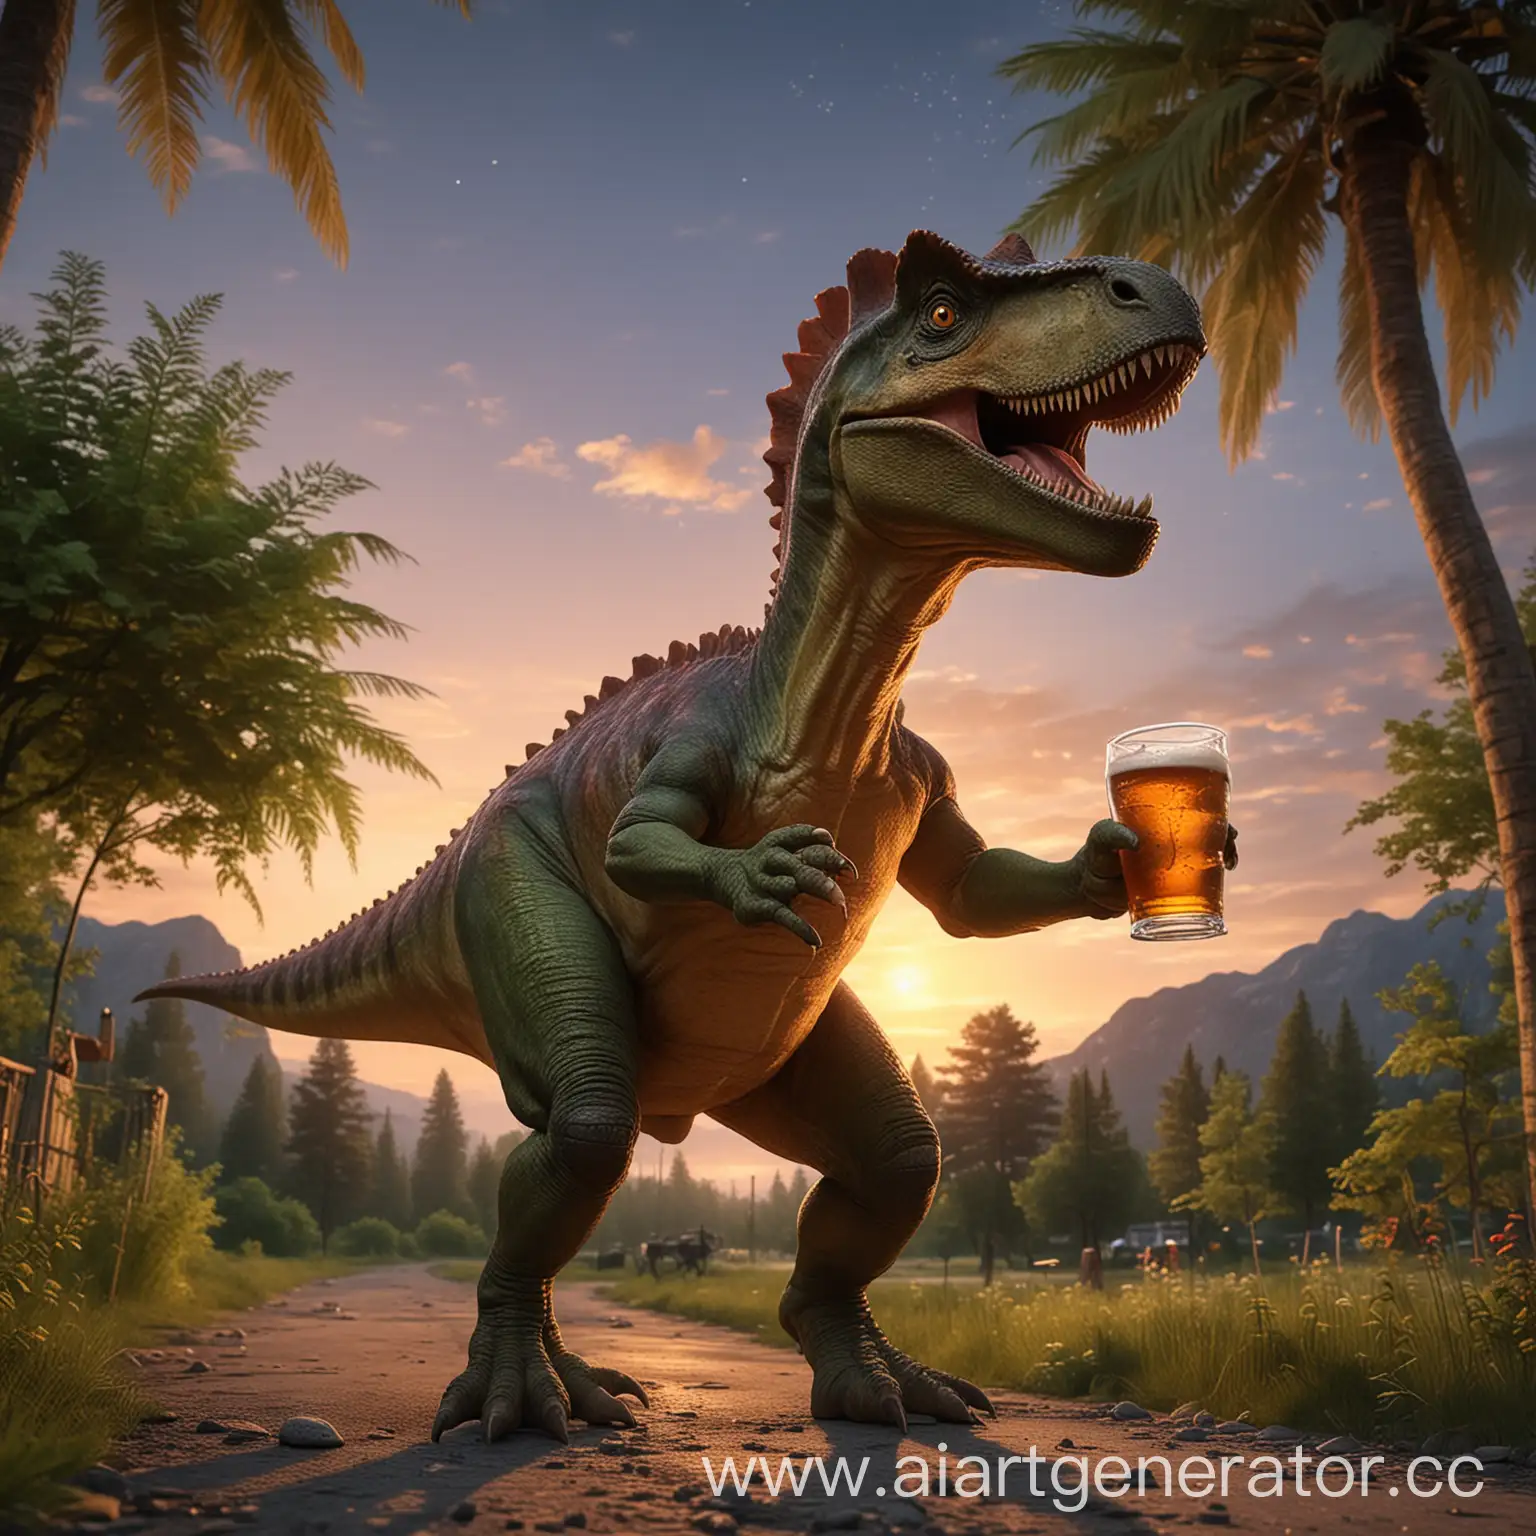 Dinosaur-Enjoying-a-Refreshing-Beer-on-a-Summer-Evening